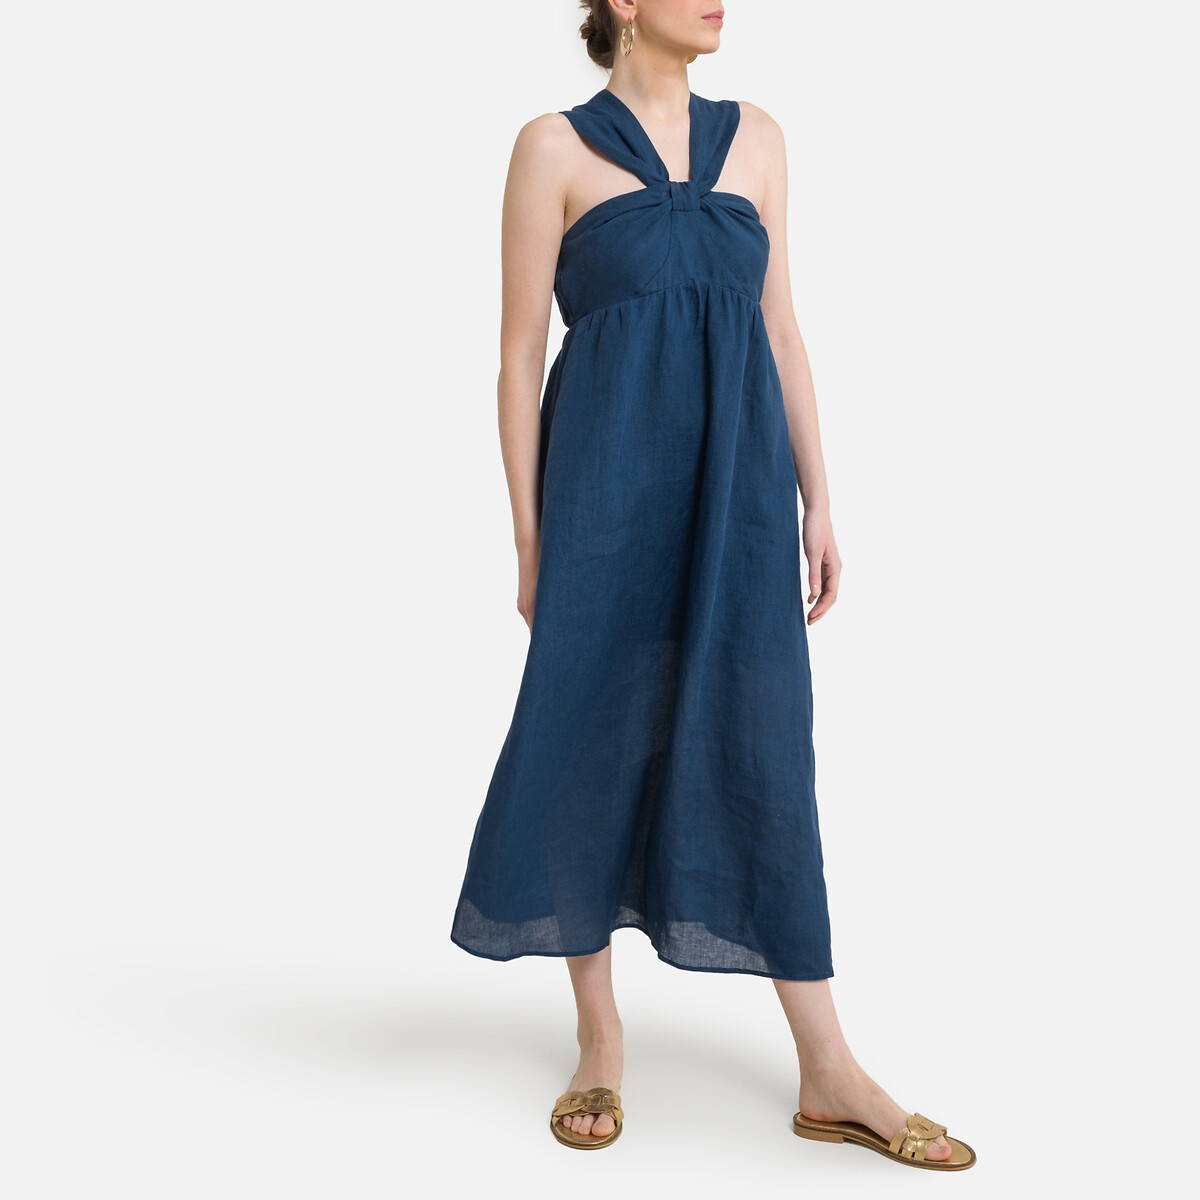 платье длинное с бретельками-завязками 0(xs) синий